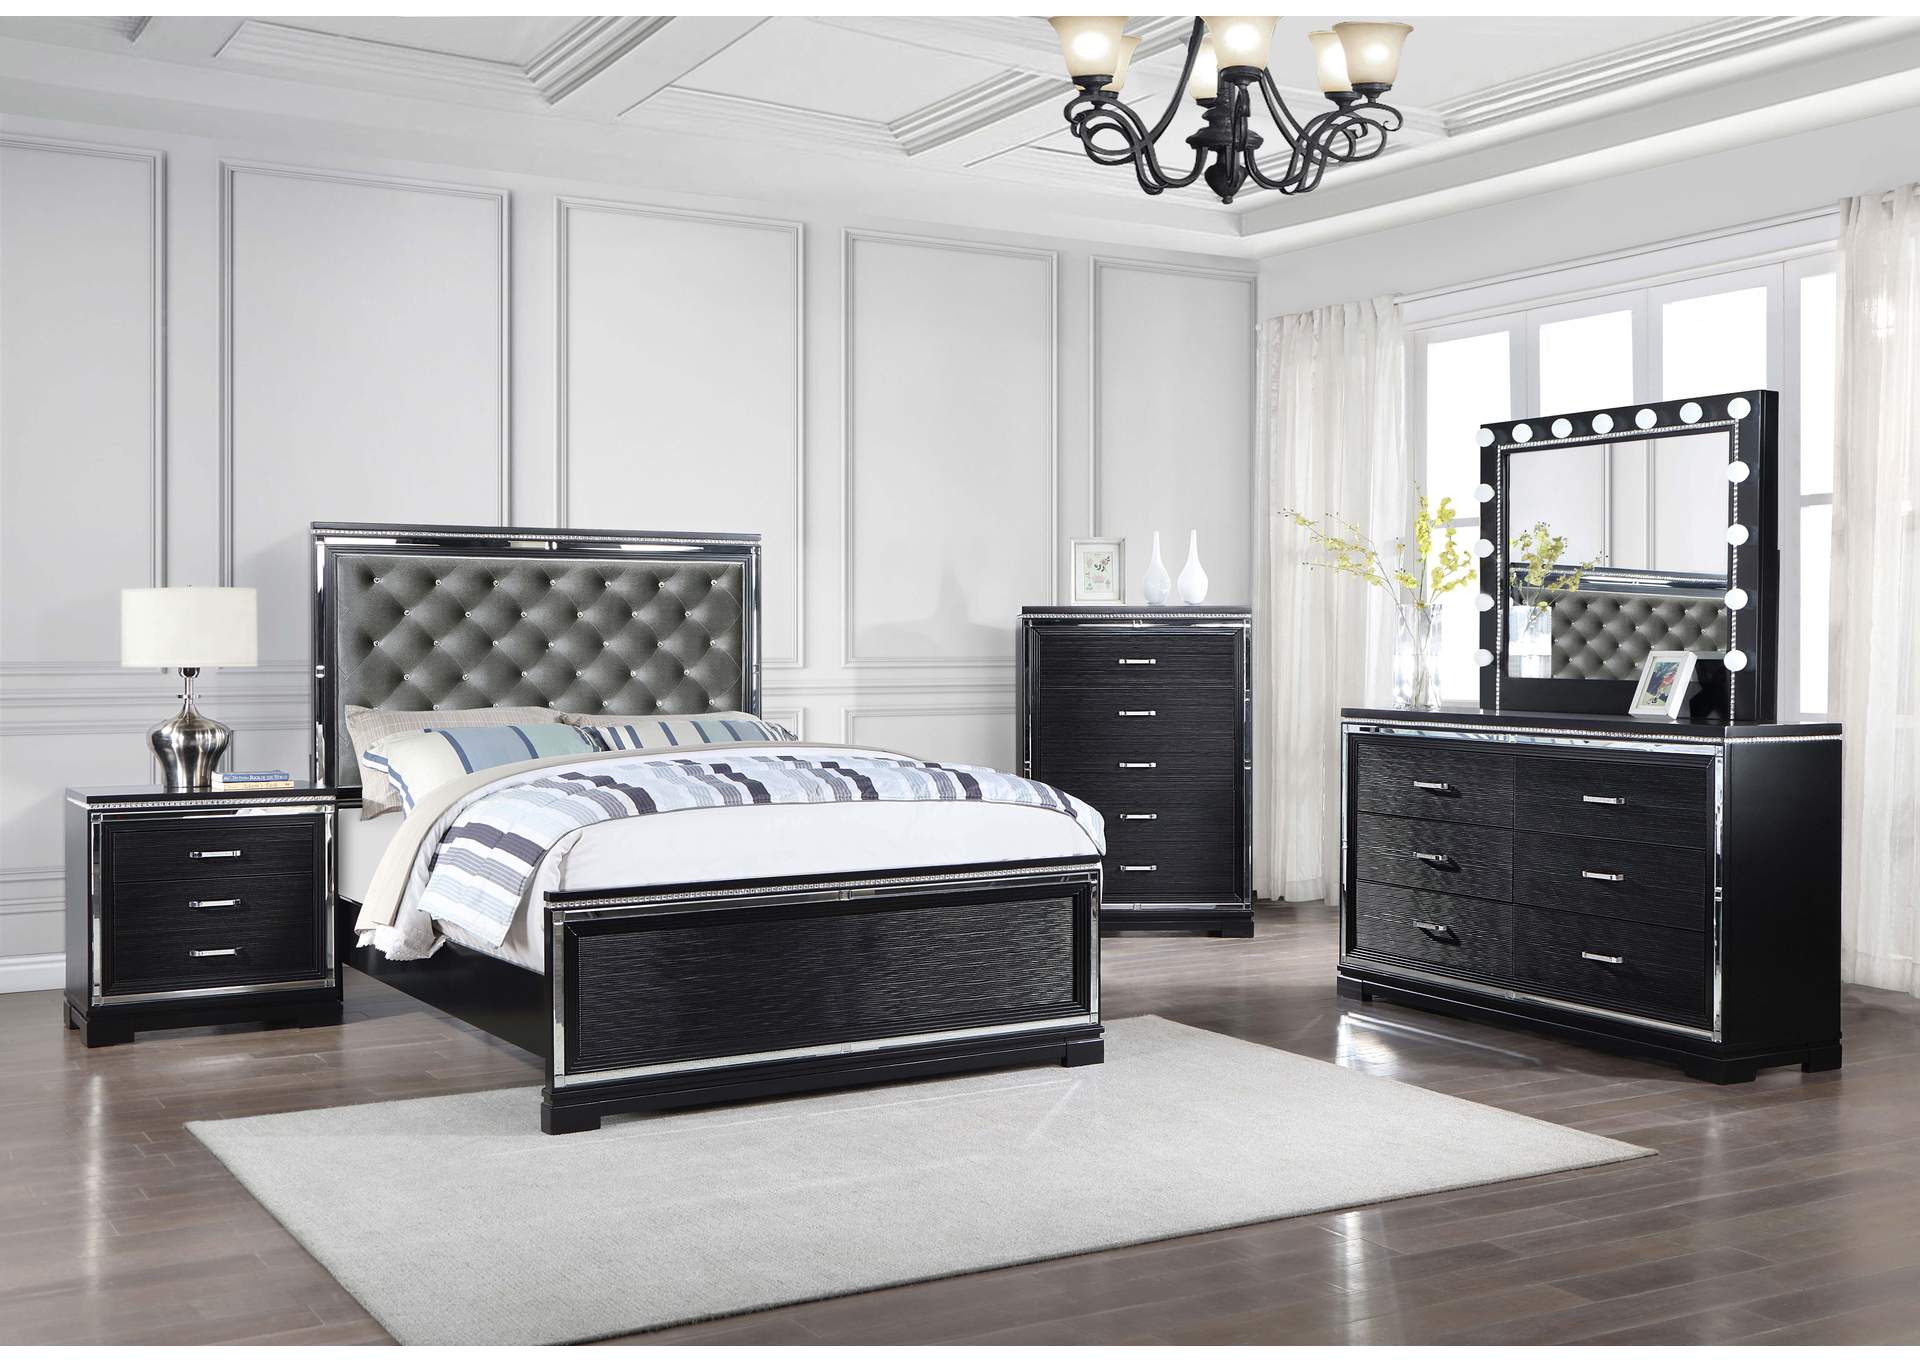 Eleanor Upholstered Tufted Bedroom Set Silver and Black Homeline Furniture